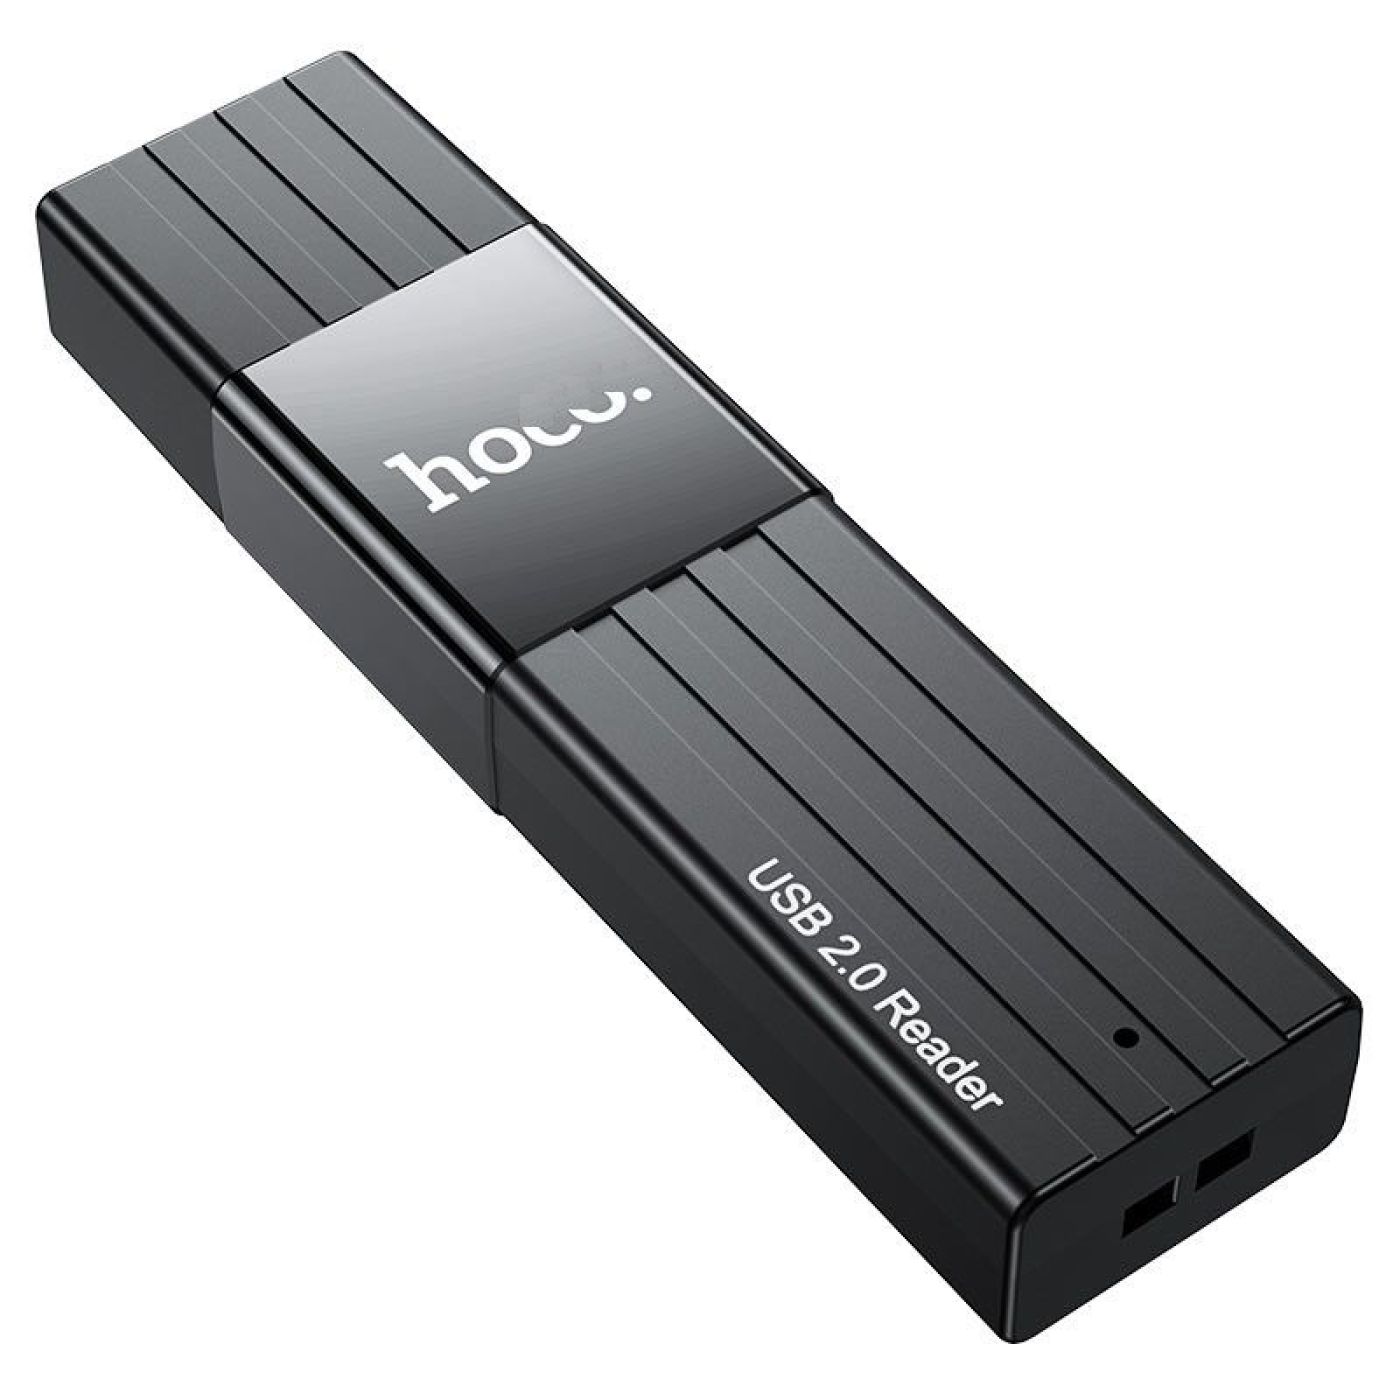 Đầu Đọc Thẻ Hoco HB20 Mindful” 2 trong 1 USB2.0